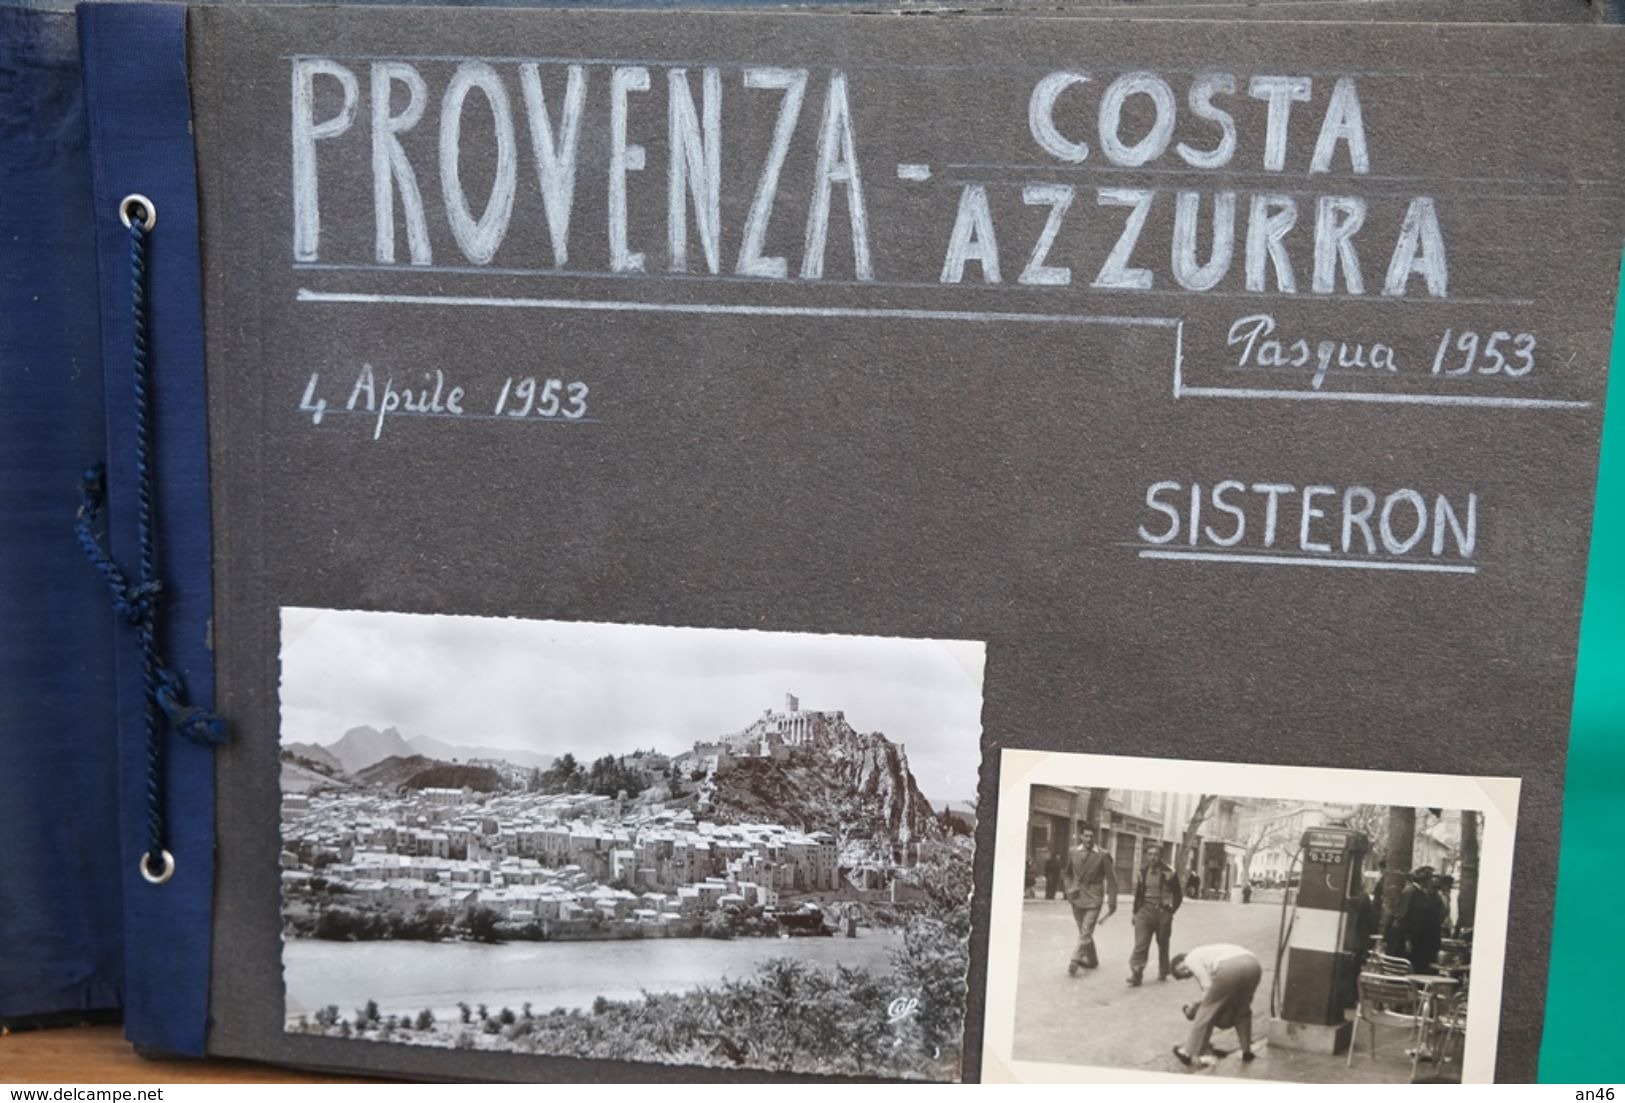 ALBUM Della Provenza-Costa Azzurra- 1953-SISTERON_EX En PROVENCE_MARSIGLIA_CASSIS_LA CIOTAT_BANDOL_TOLONE_St TROPEZ .... - Album & Collezioni